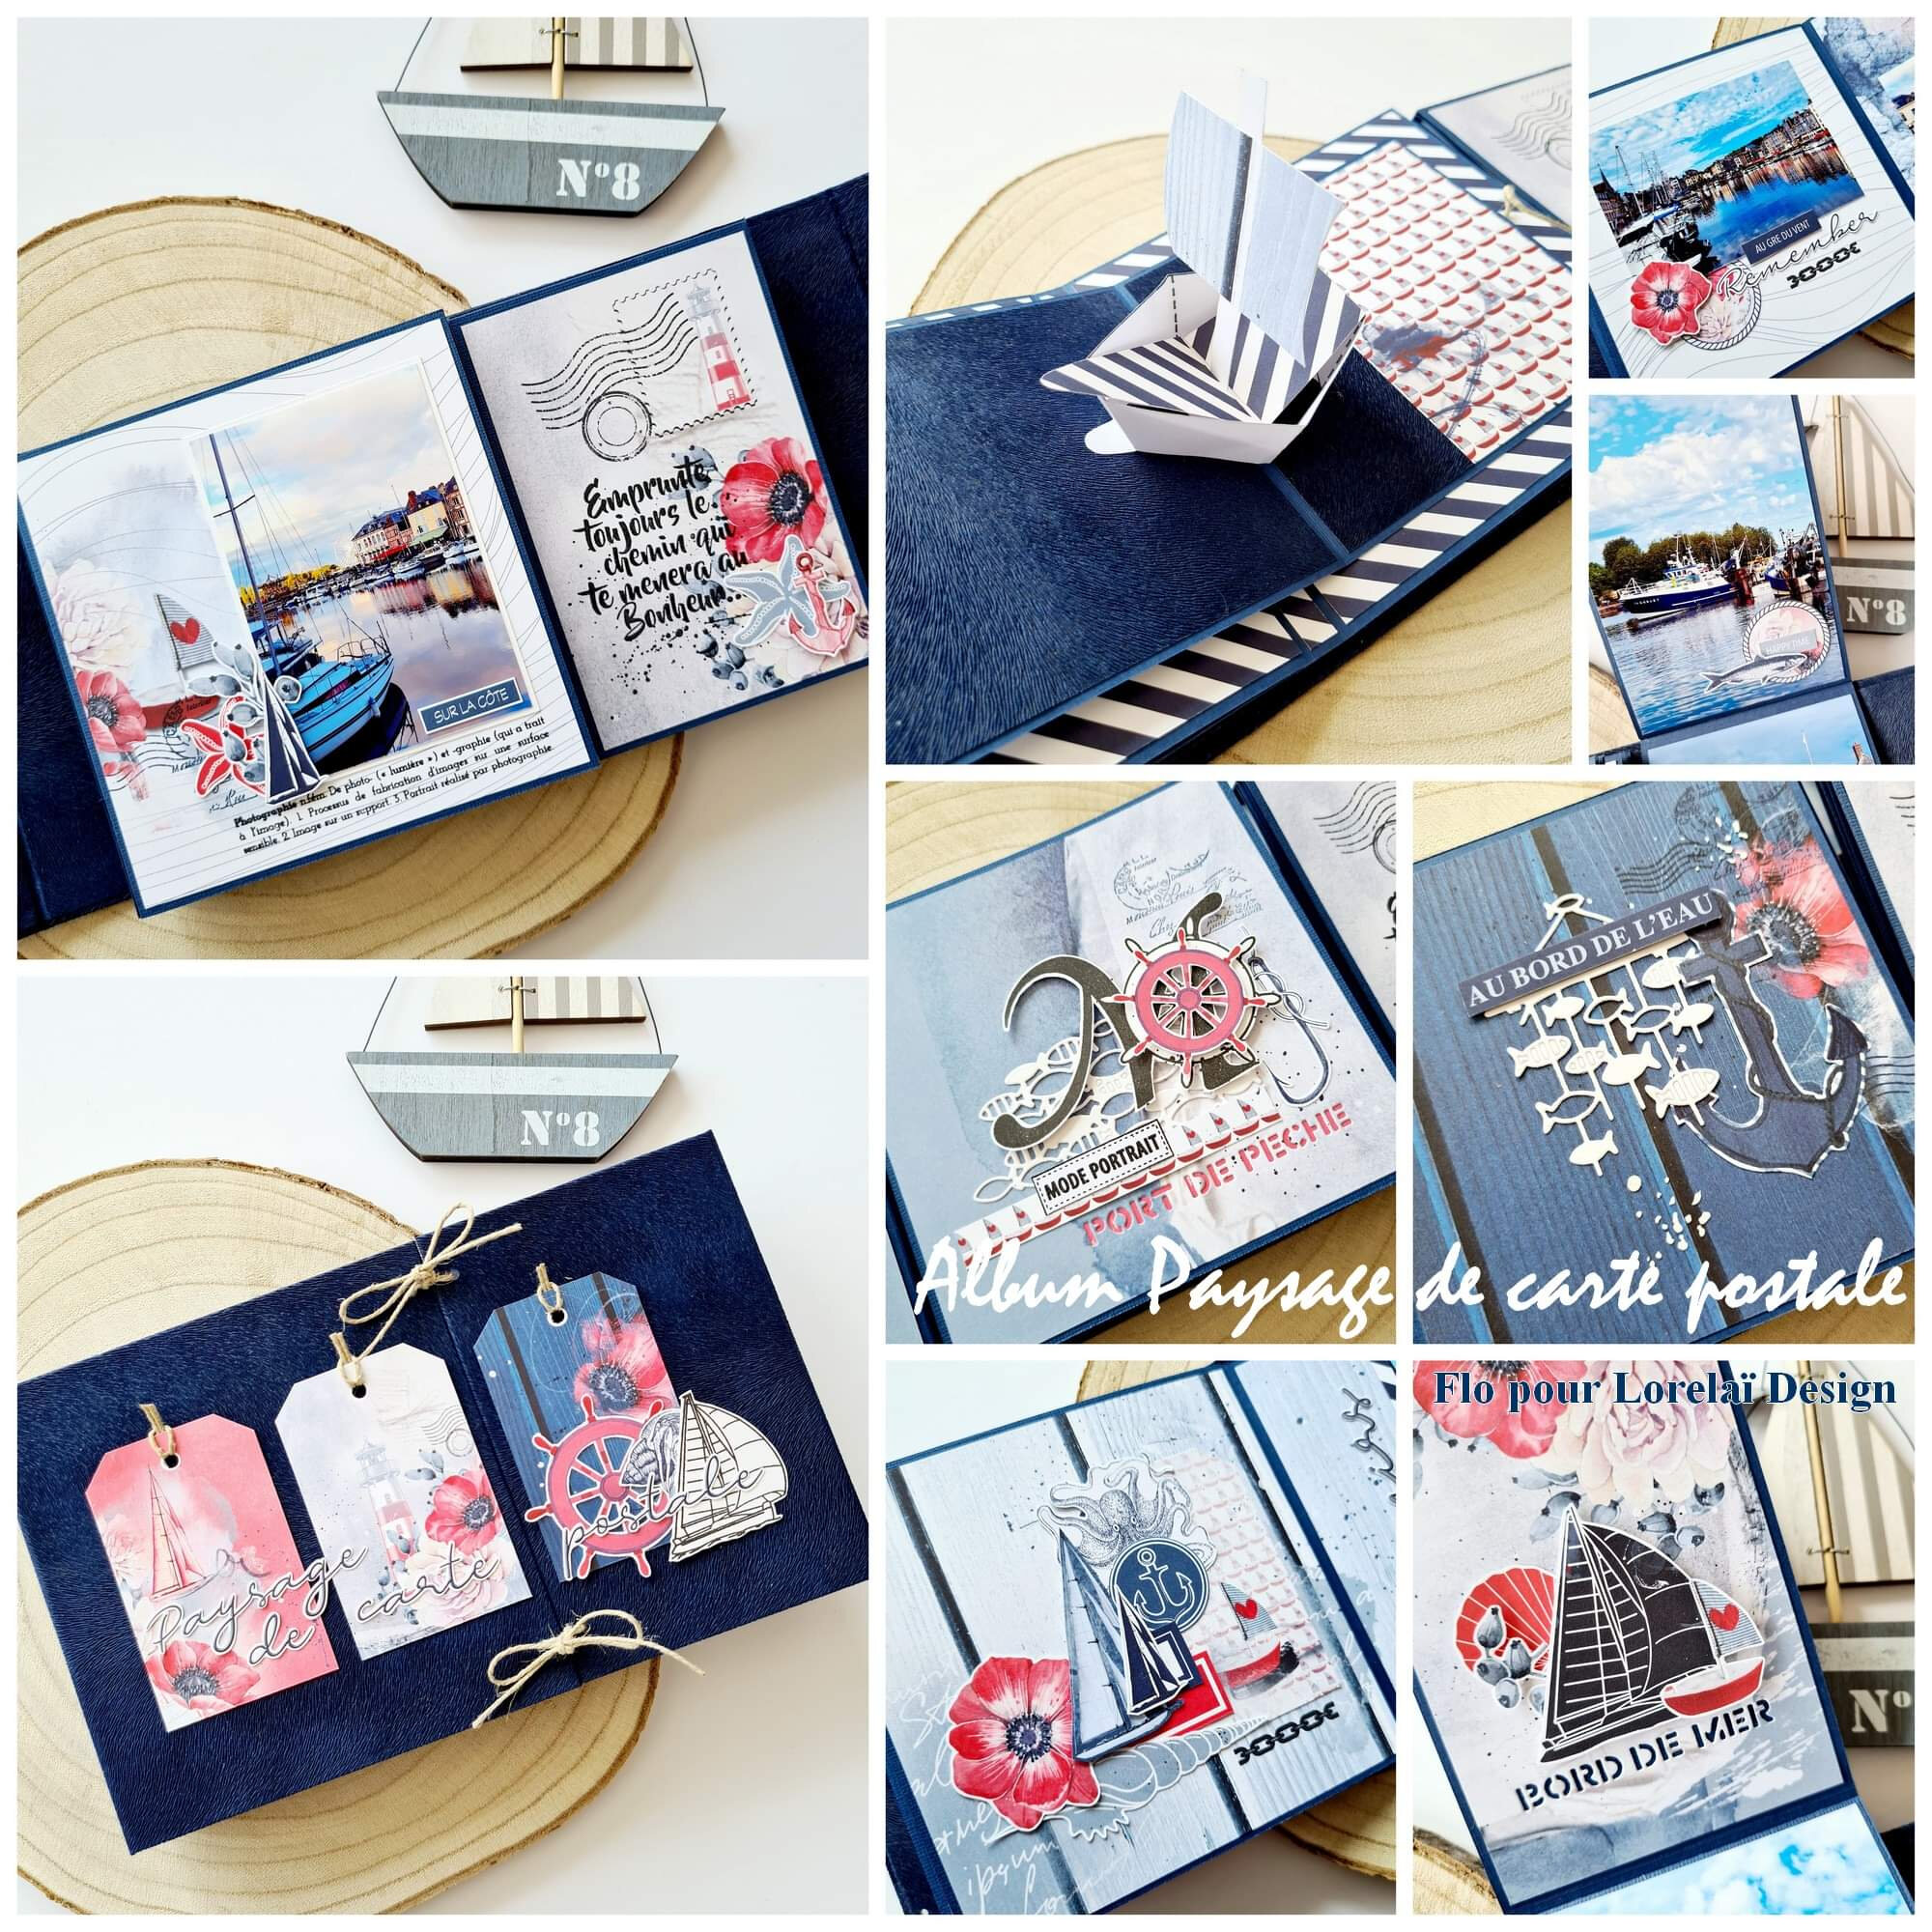 DIY : L'album de cartes postales - Caro Dels - Blog DIY et loisirs